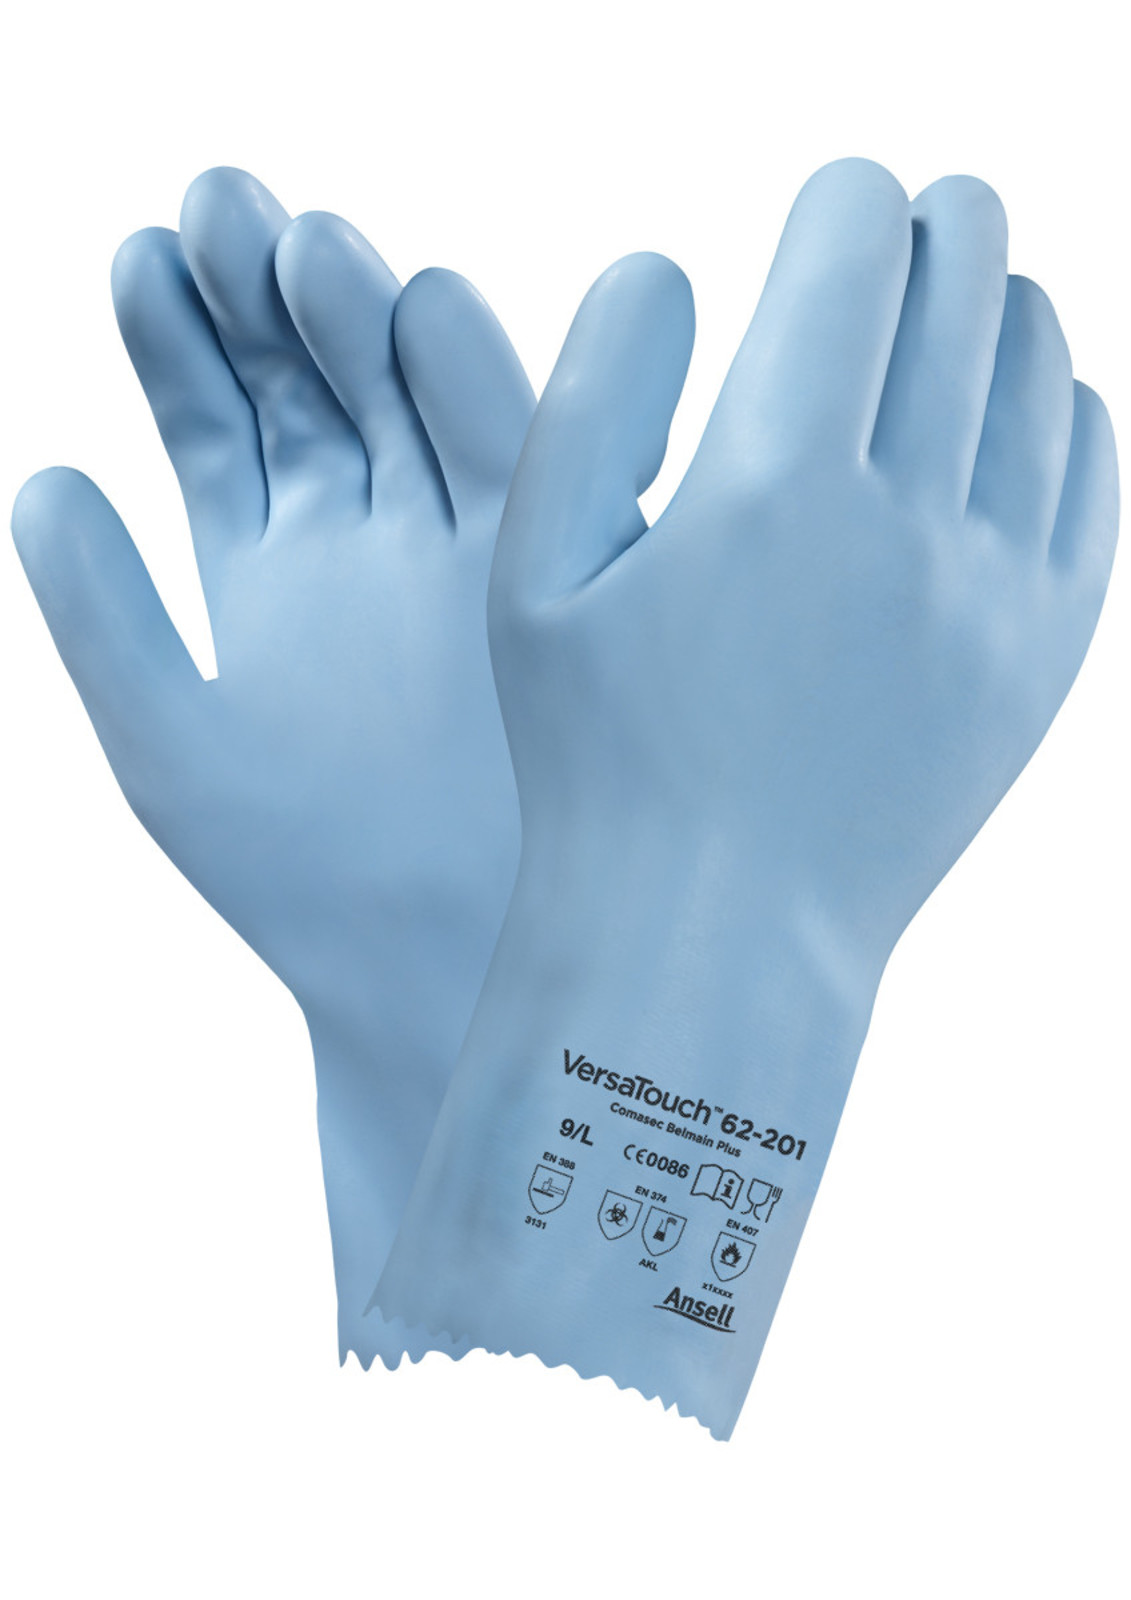 Tepluodolné latexové rukavice Ansell VersaTouch 62-201 - veľkosť: 9/L, farba: modrá